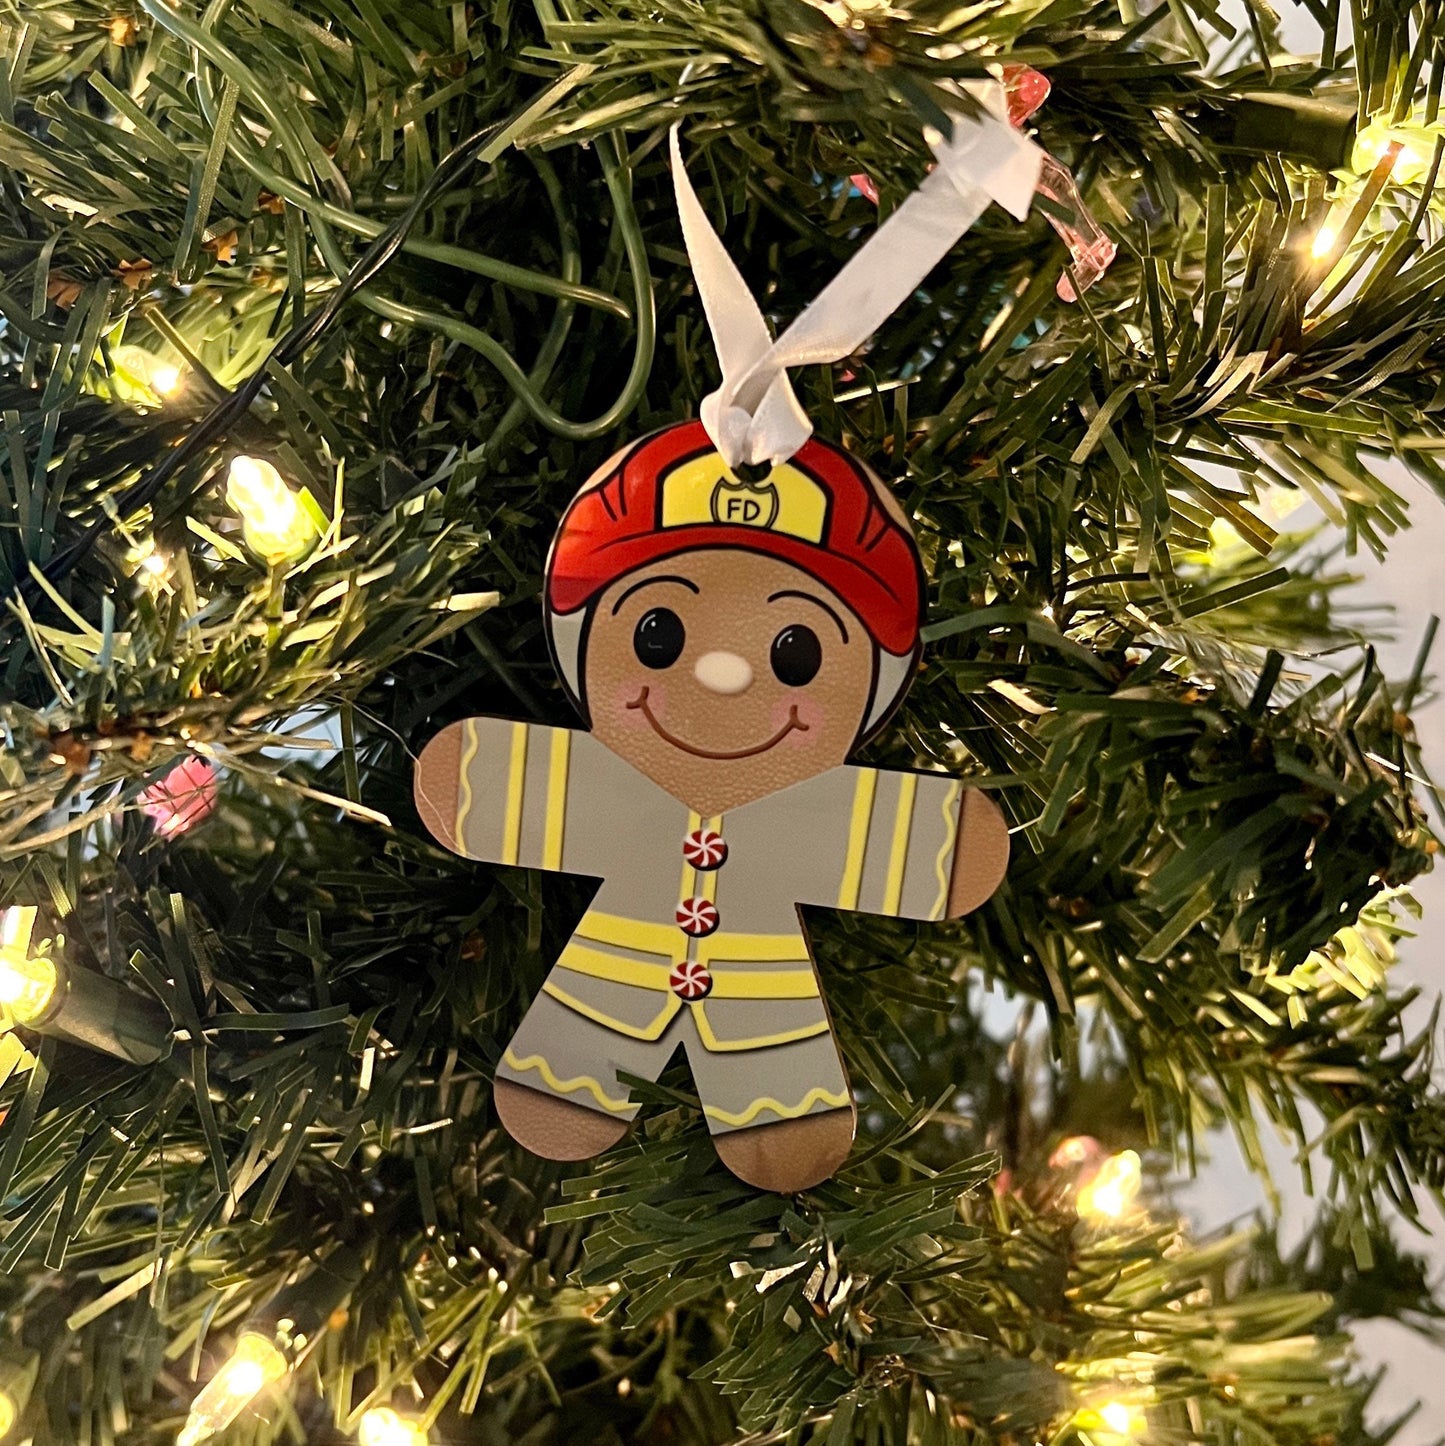 Fireman Gingerbread Man Ornament Fire fighter